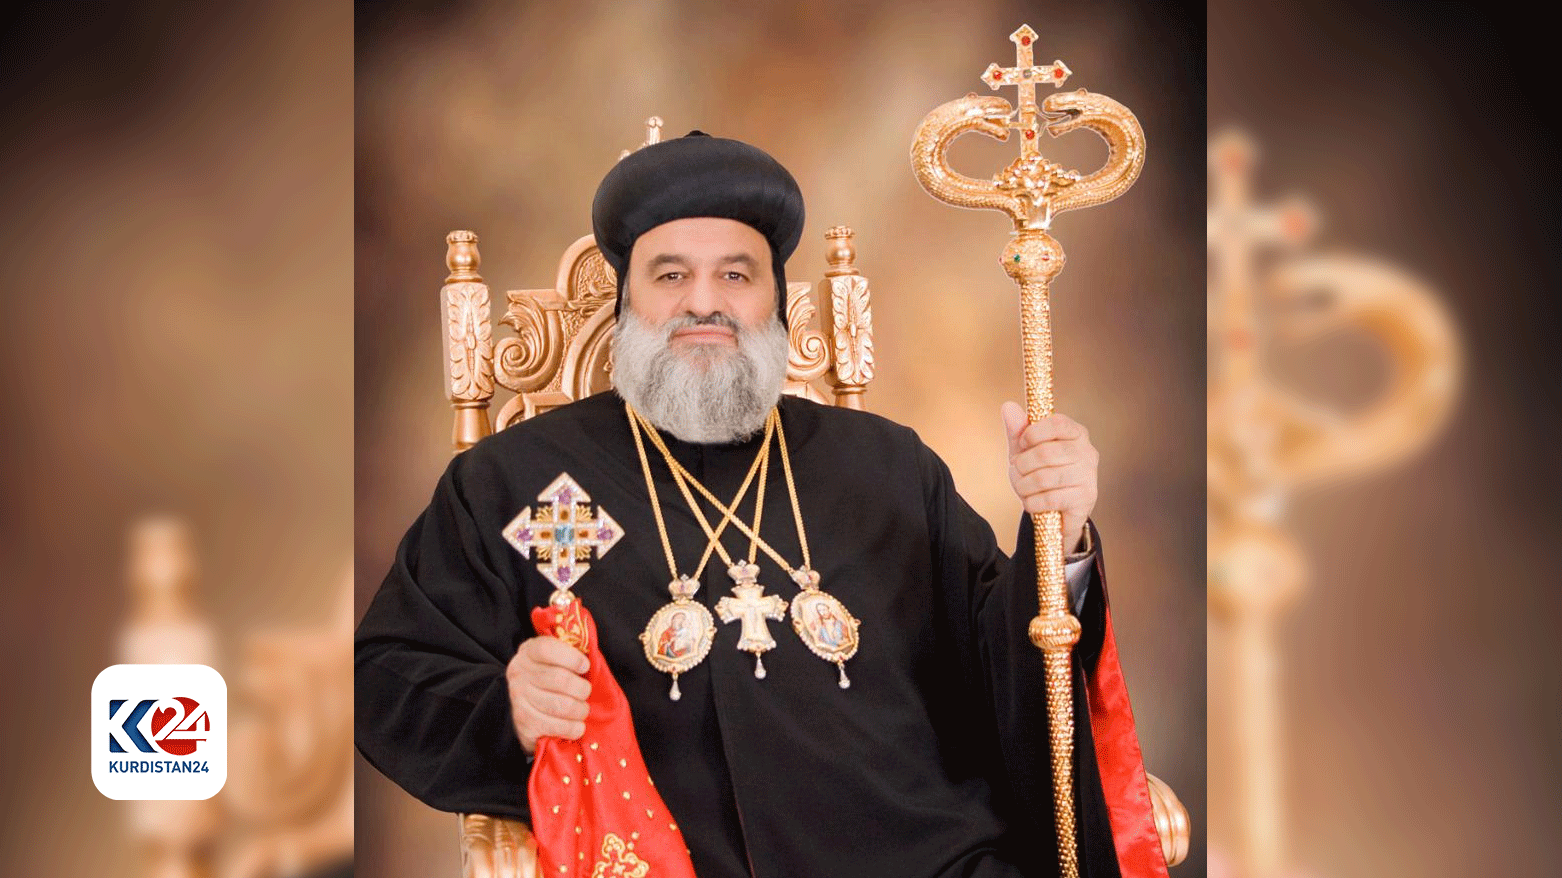 پاتریارک مار اغناطیوس افرام دوم، رئیس کلیسای سریانی ارتدوکس در جهان